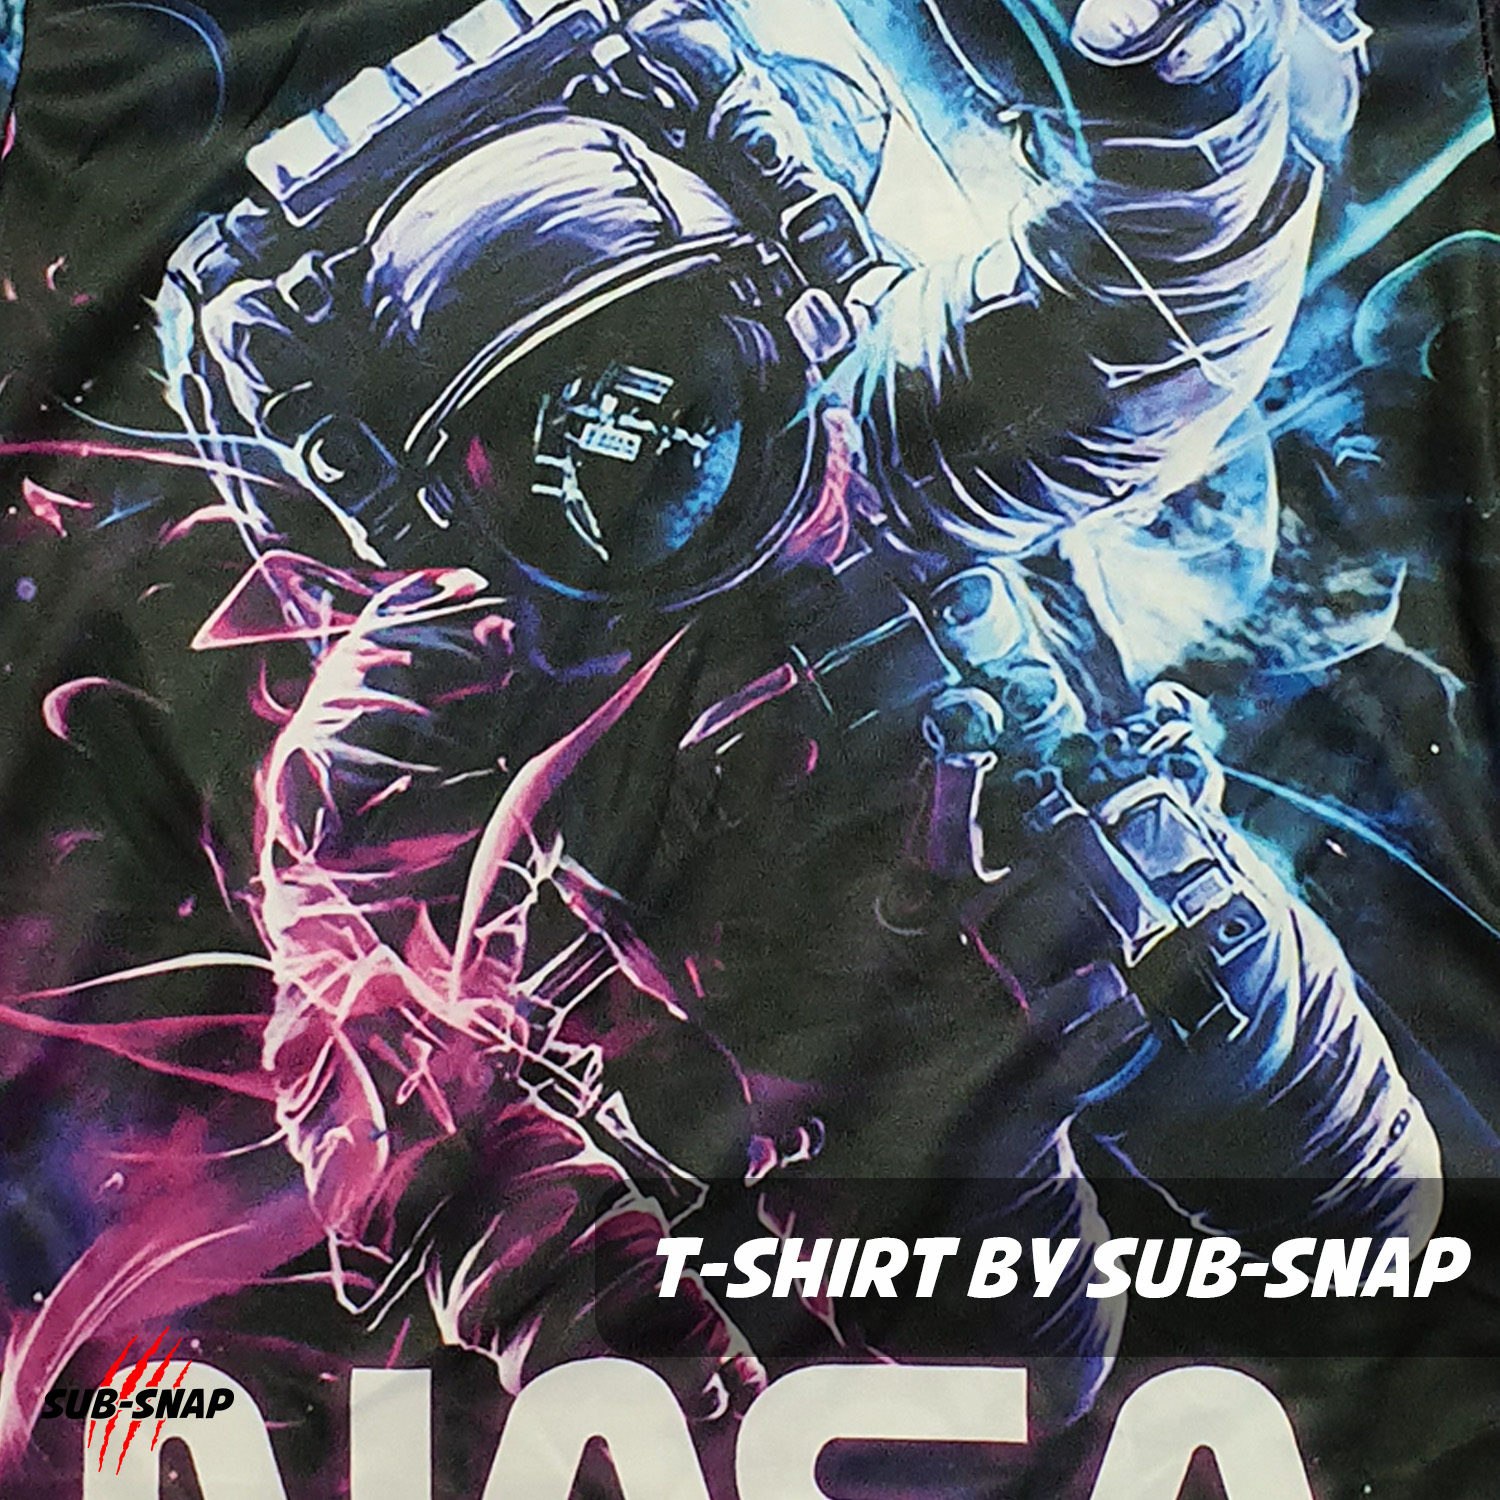 รูปภาพเพิ่มเติมเกี่ยวกับ SnapCat SK007 เสื้อยืดเด็กอายุ 4-10 ปี, ลาย NASA Graphic เสื้อแฟชั่นเด็ก(ใหญ่)